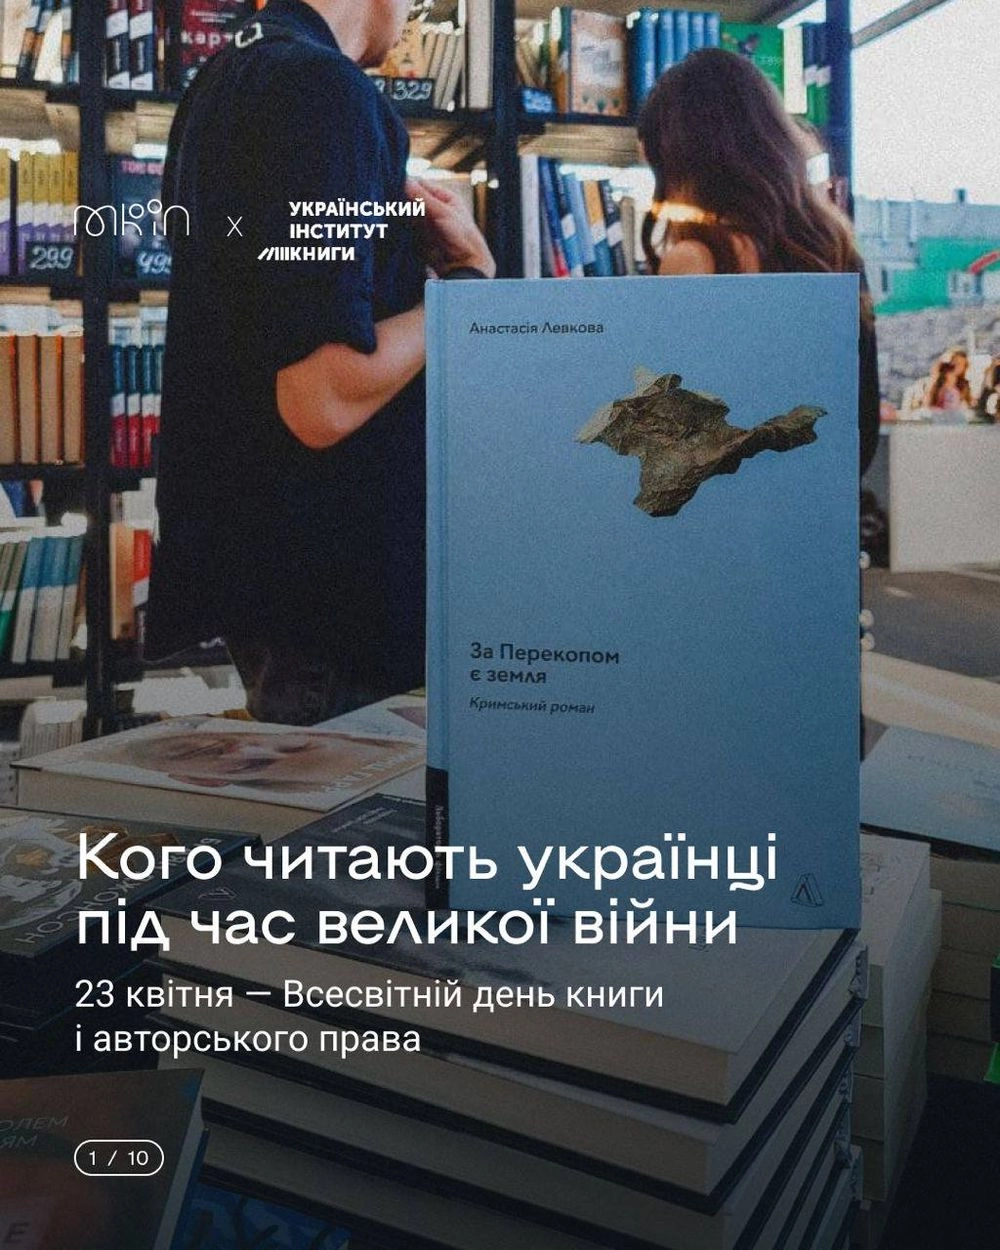 Українська література процвітає попри війну: 54% читачів обирають українські книжки